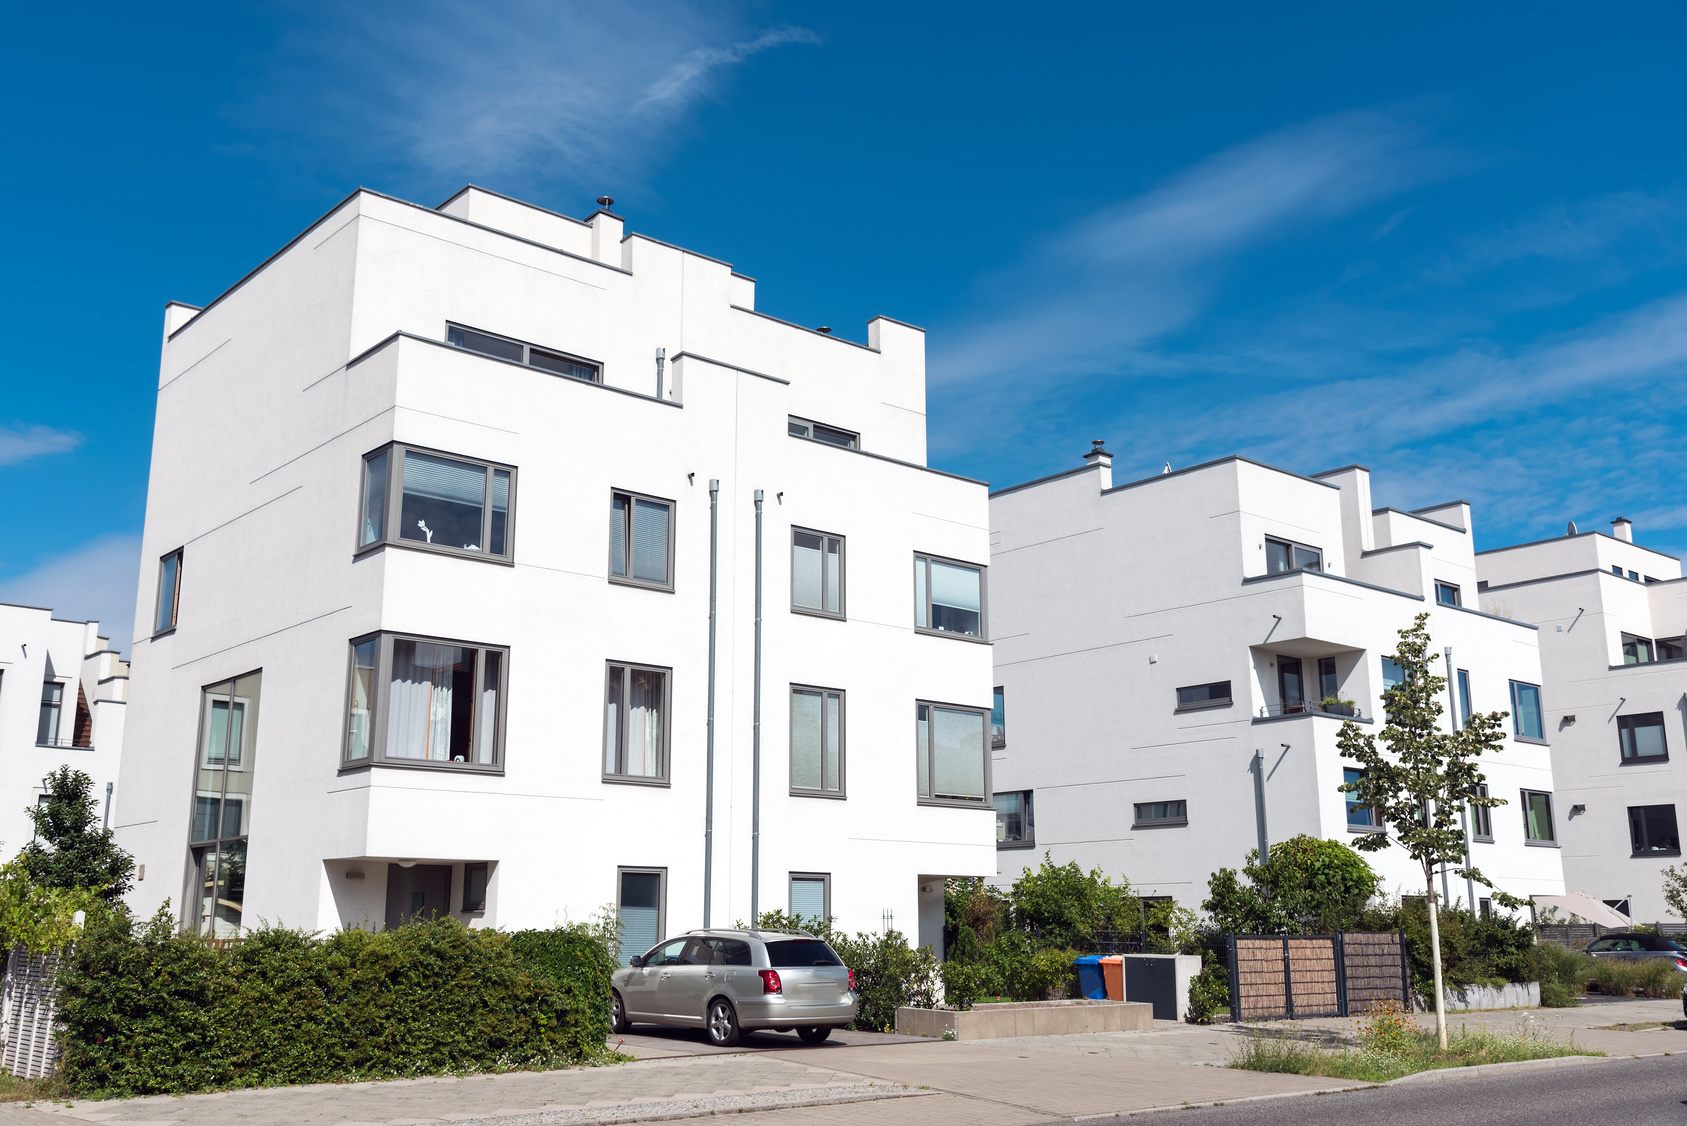 Miet-Immobilien - Büroräume oder Wohnung mieten in Rosenheim & Umgebung